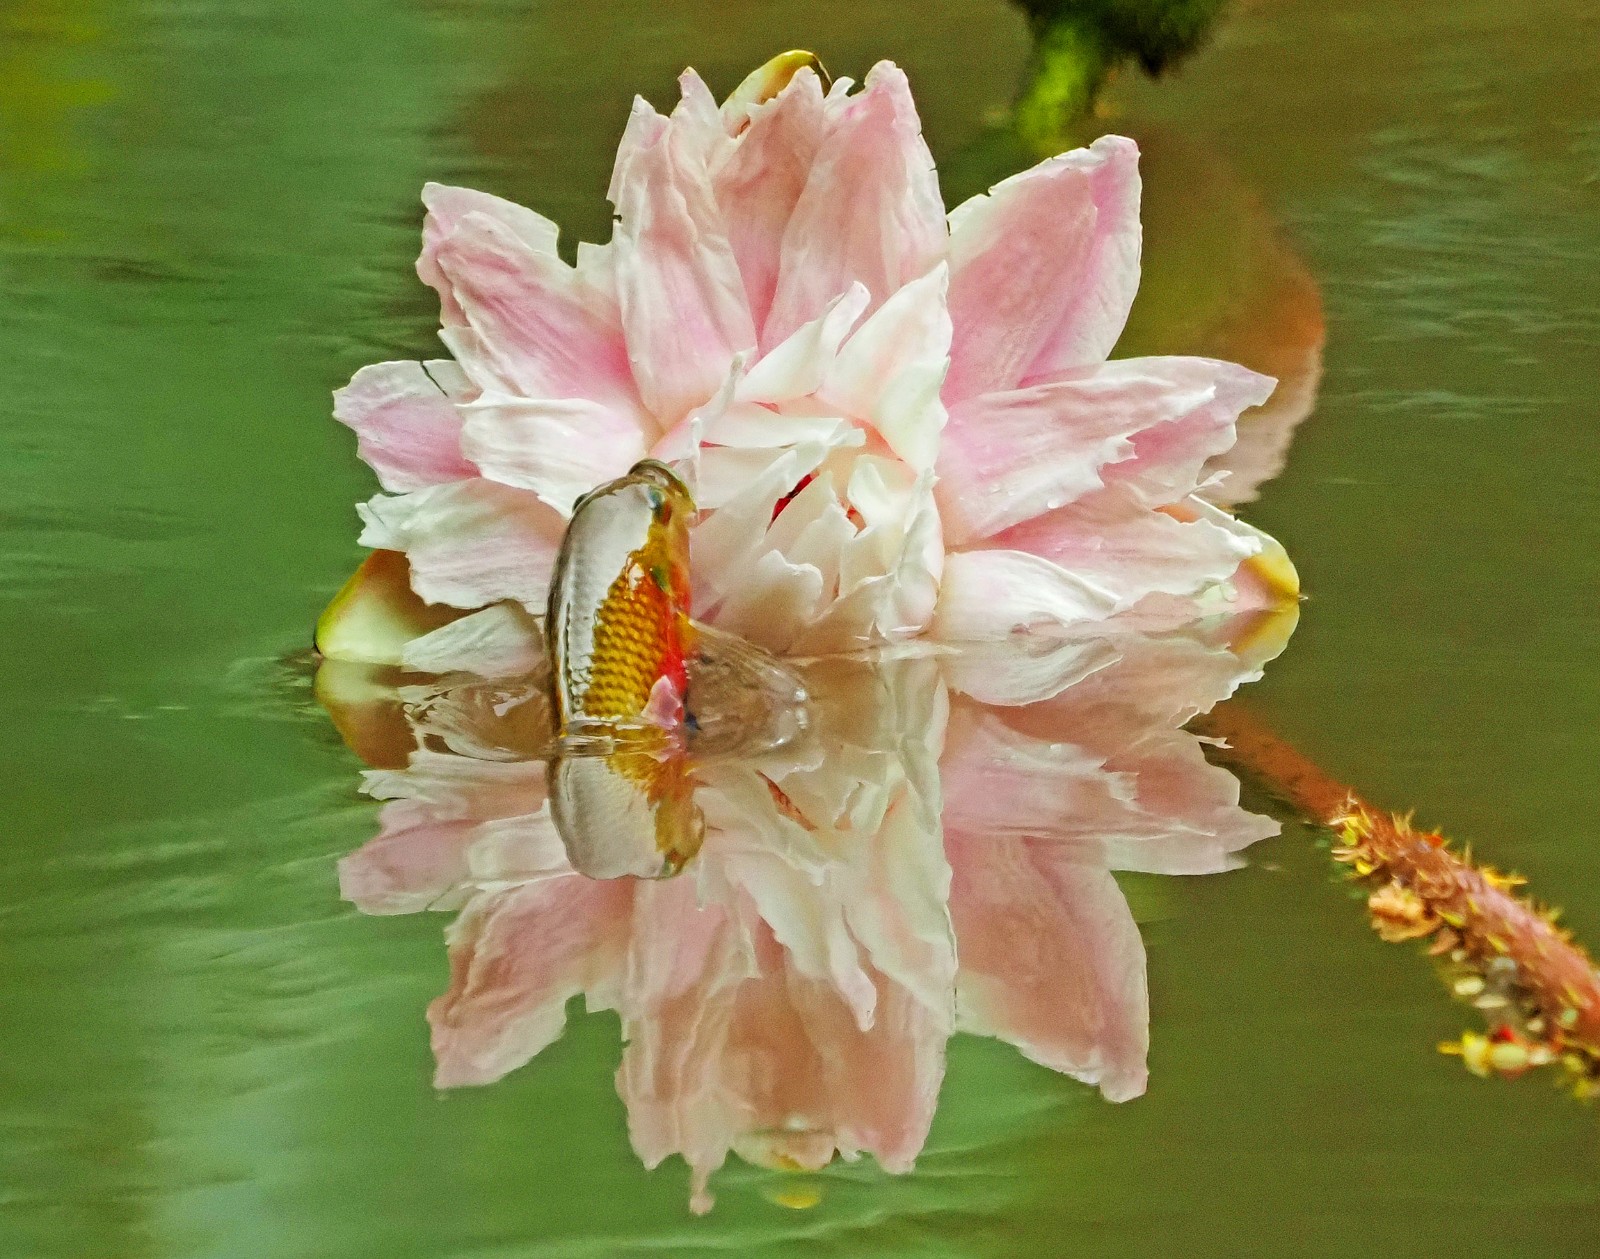 4 粉红色的莲花半泡在水中，鱼儿跳出水面，与莲花撞个满怀。（来源：广州珠江公园）a.jpg